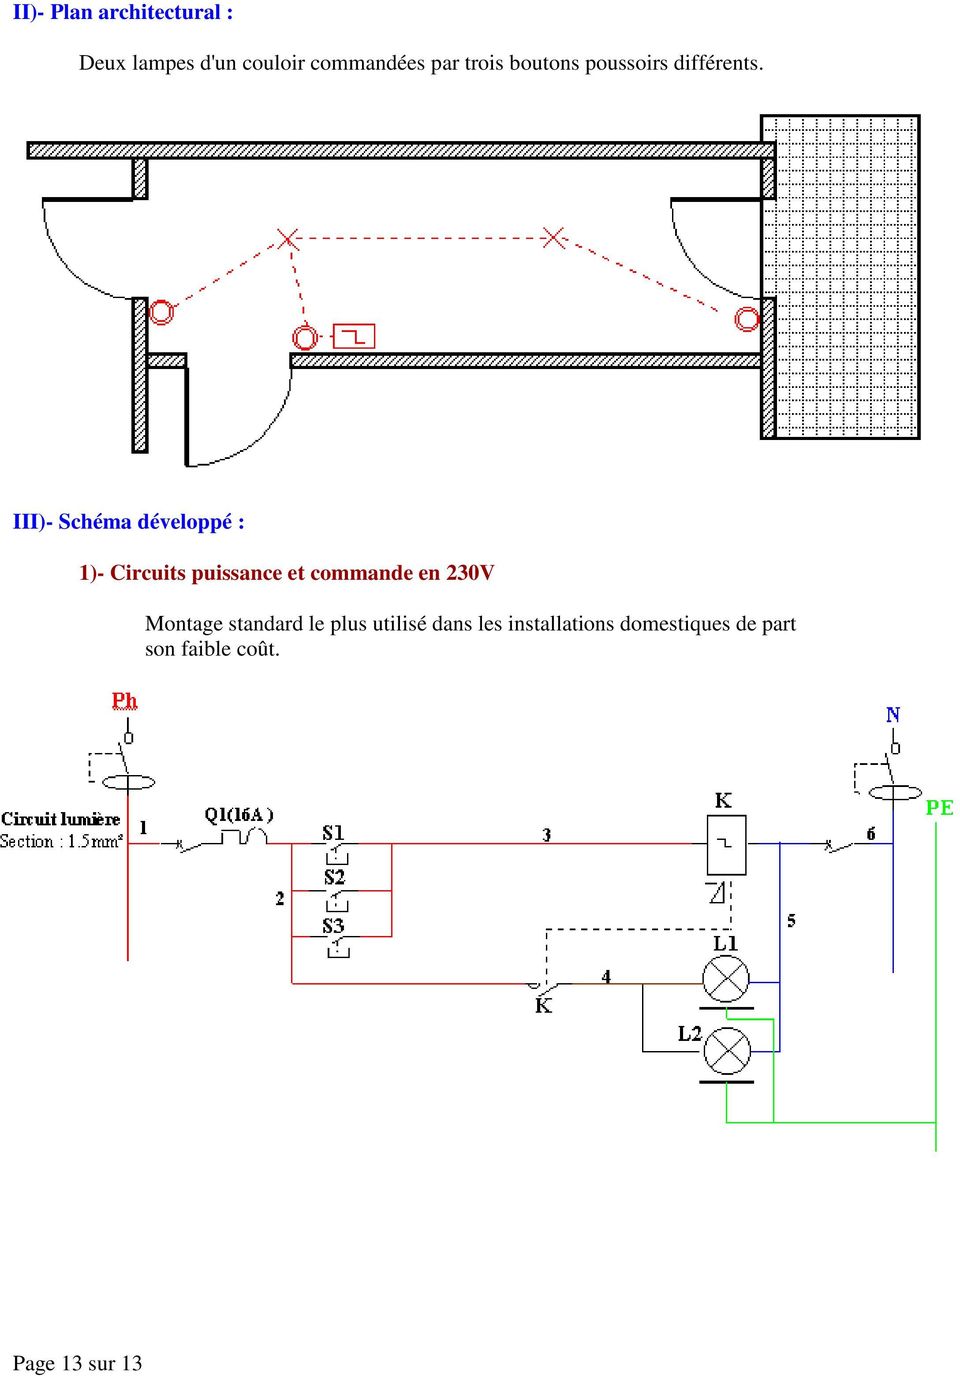 III)- Schéma développé : 1)- Circuits puissance et commande en 230V